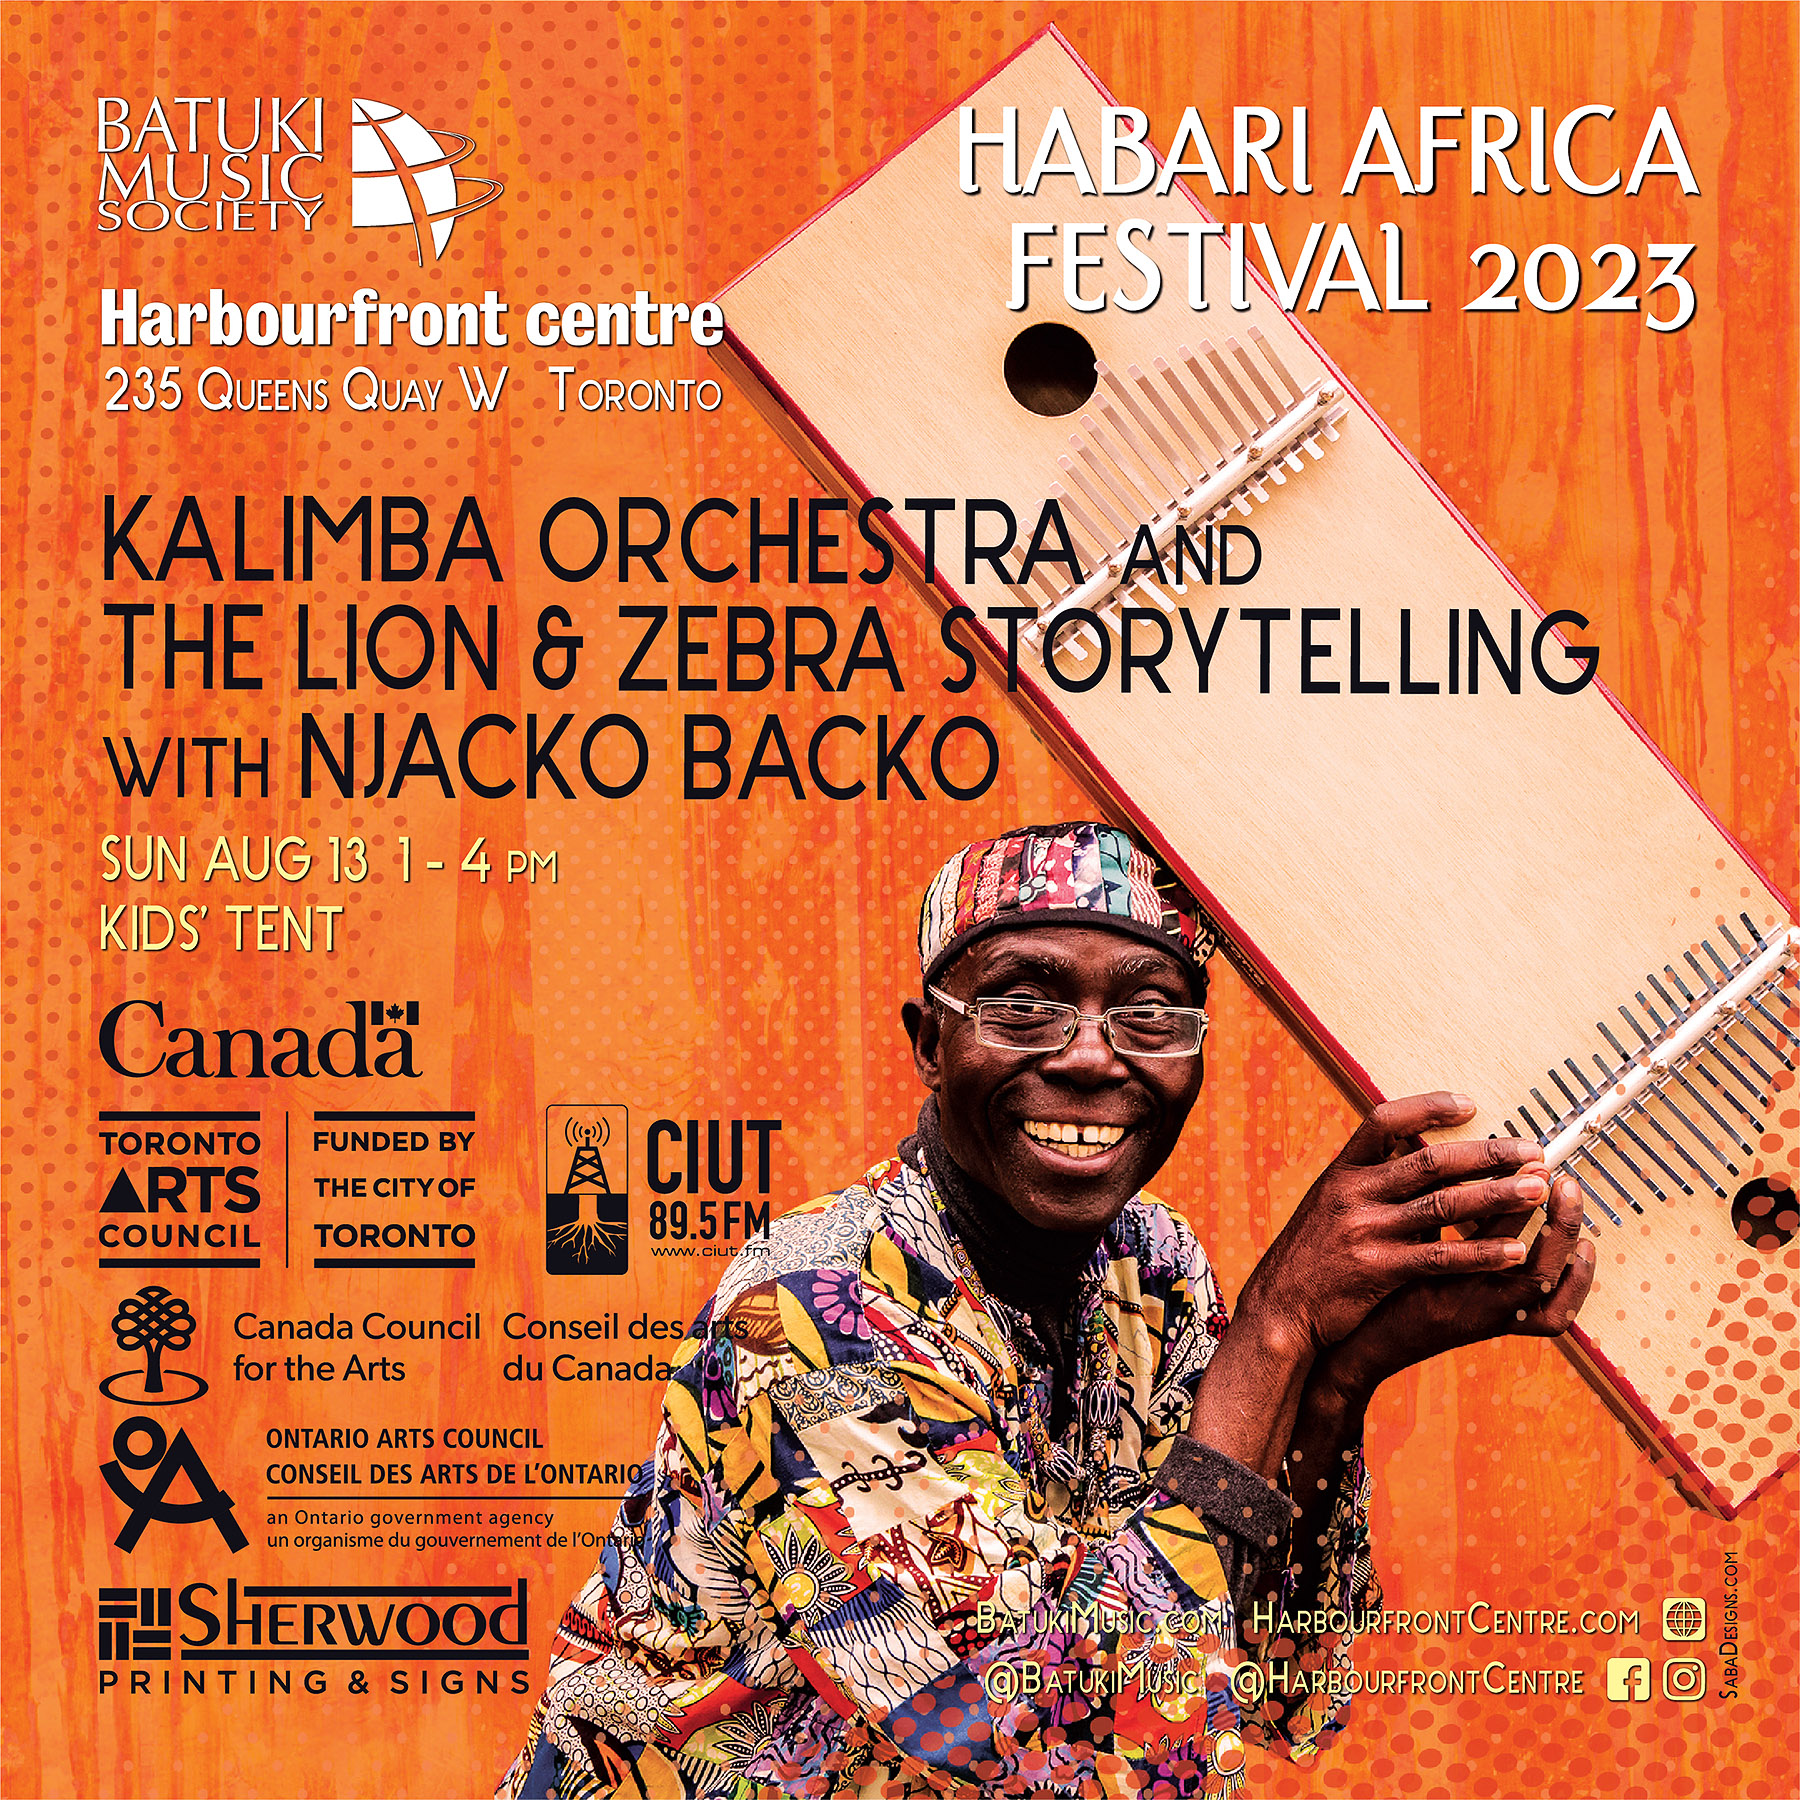 Habari Africa Live Festival 2023 by Batuki Music Society Njacko Backo Kalimba